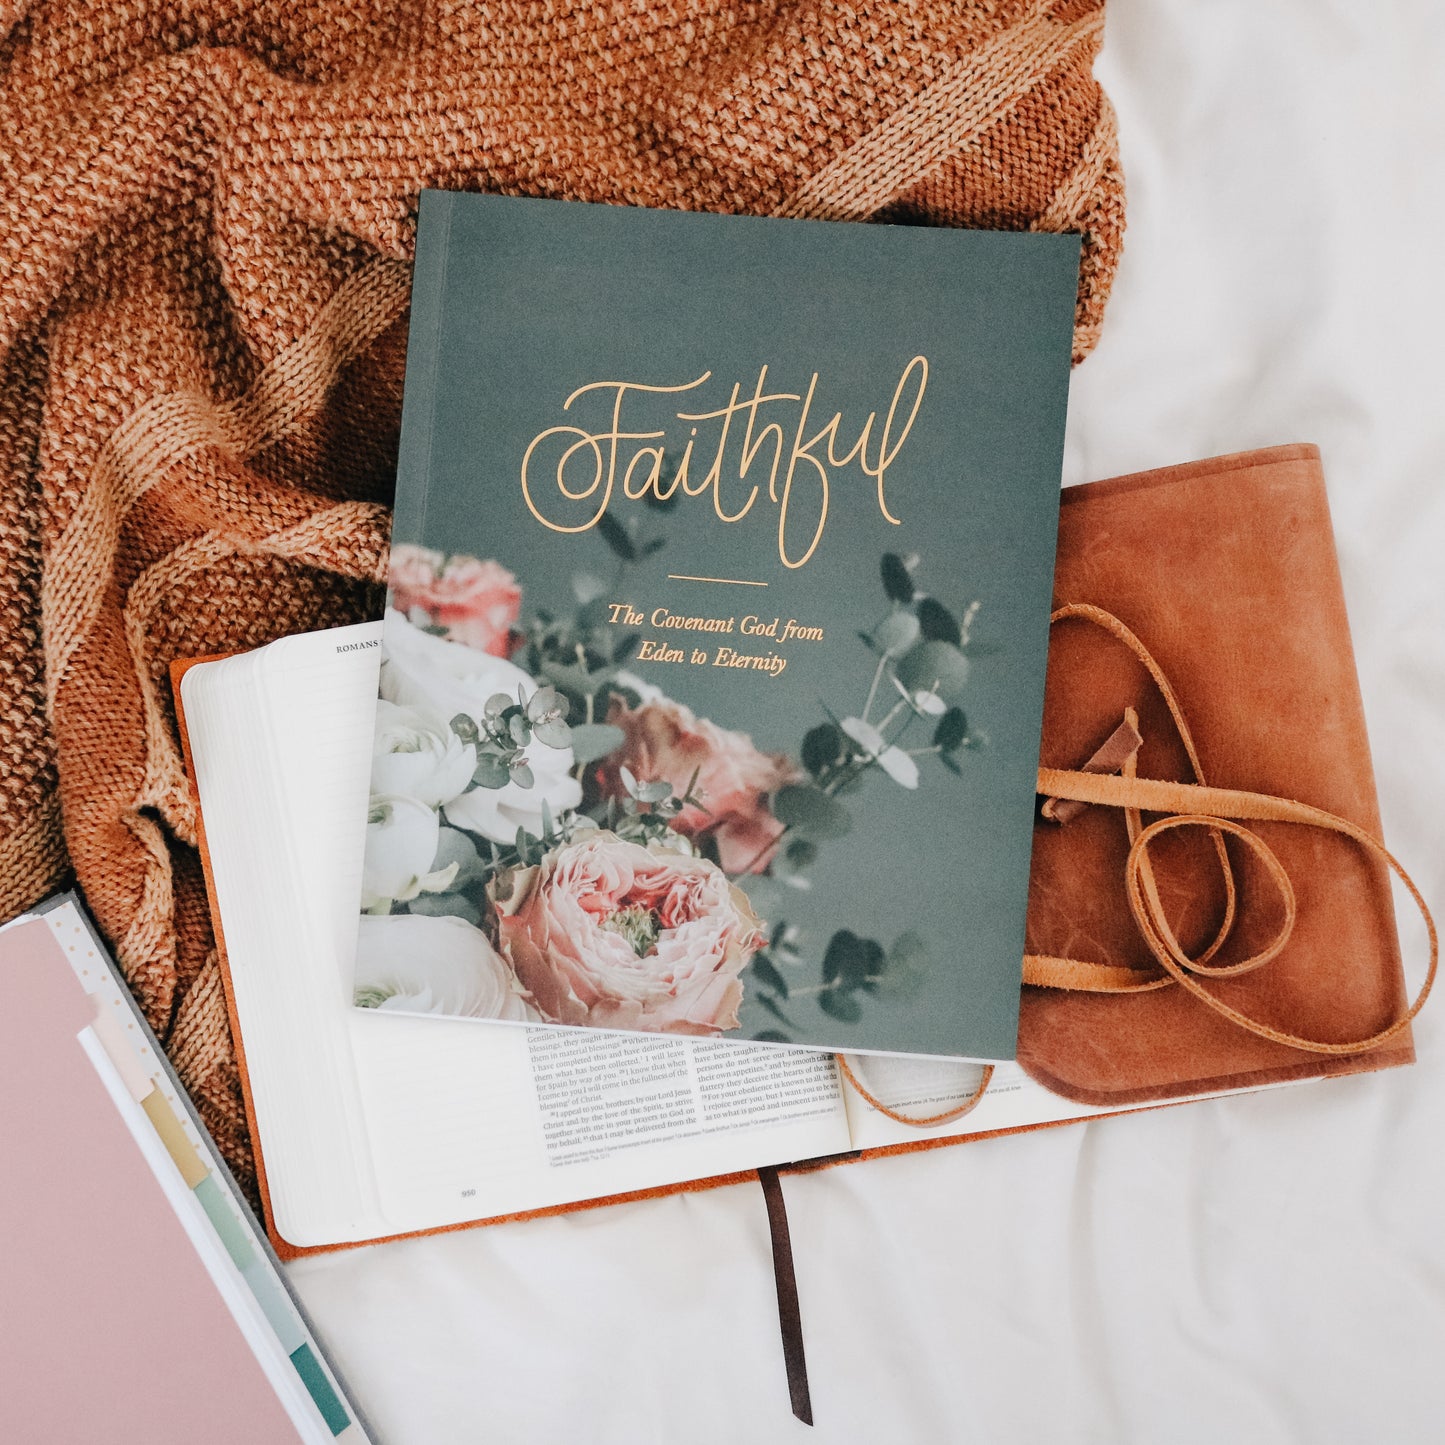 Faithful | From Eden to Eternity